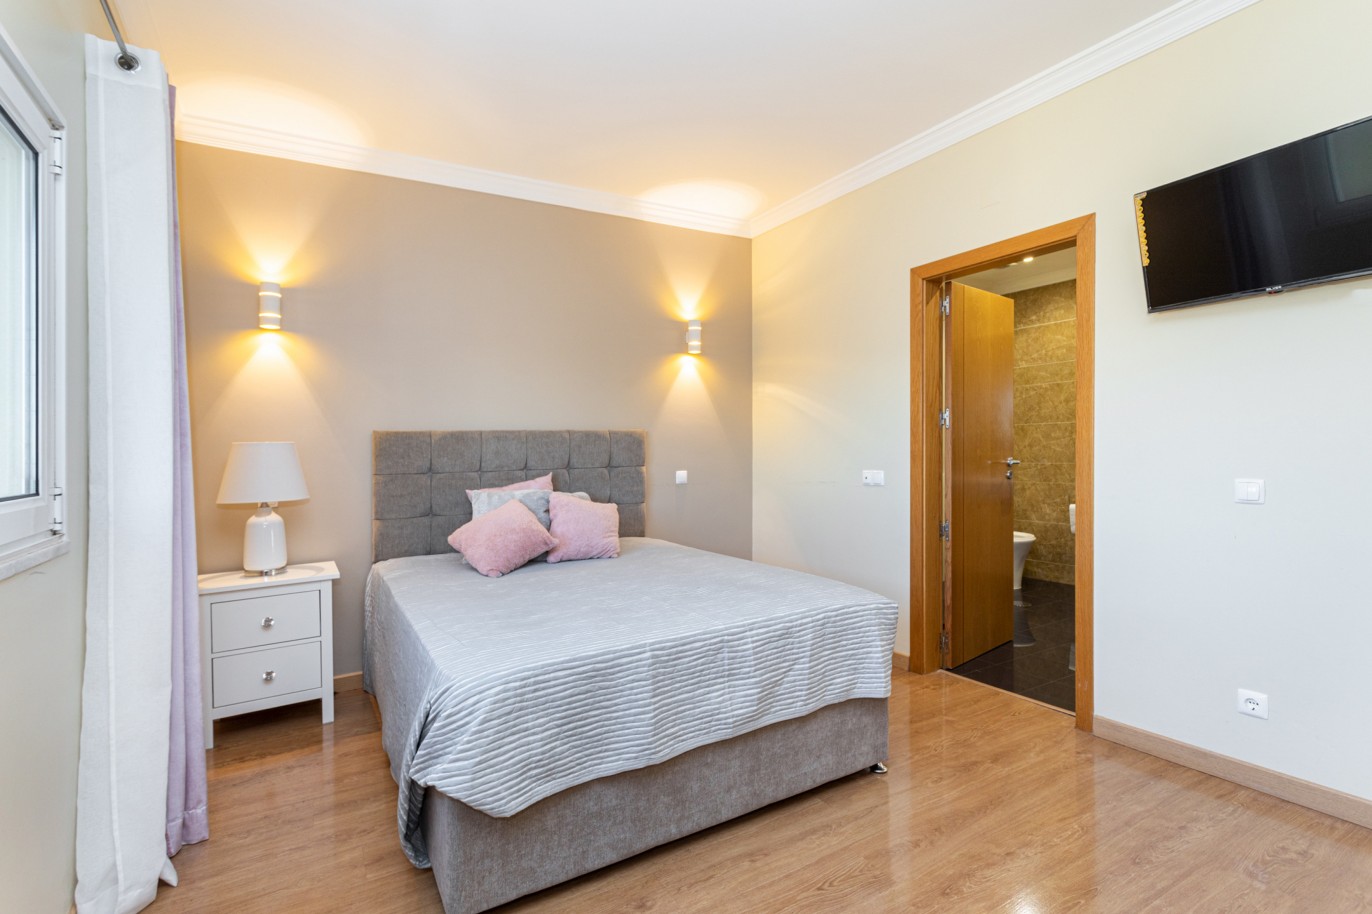 Villa de 4 dormitorios en zona de prestigio, en venta en Almancil, Algarve_217664